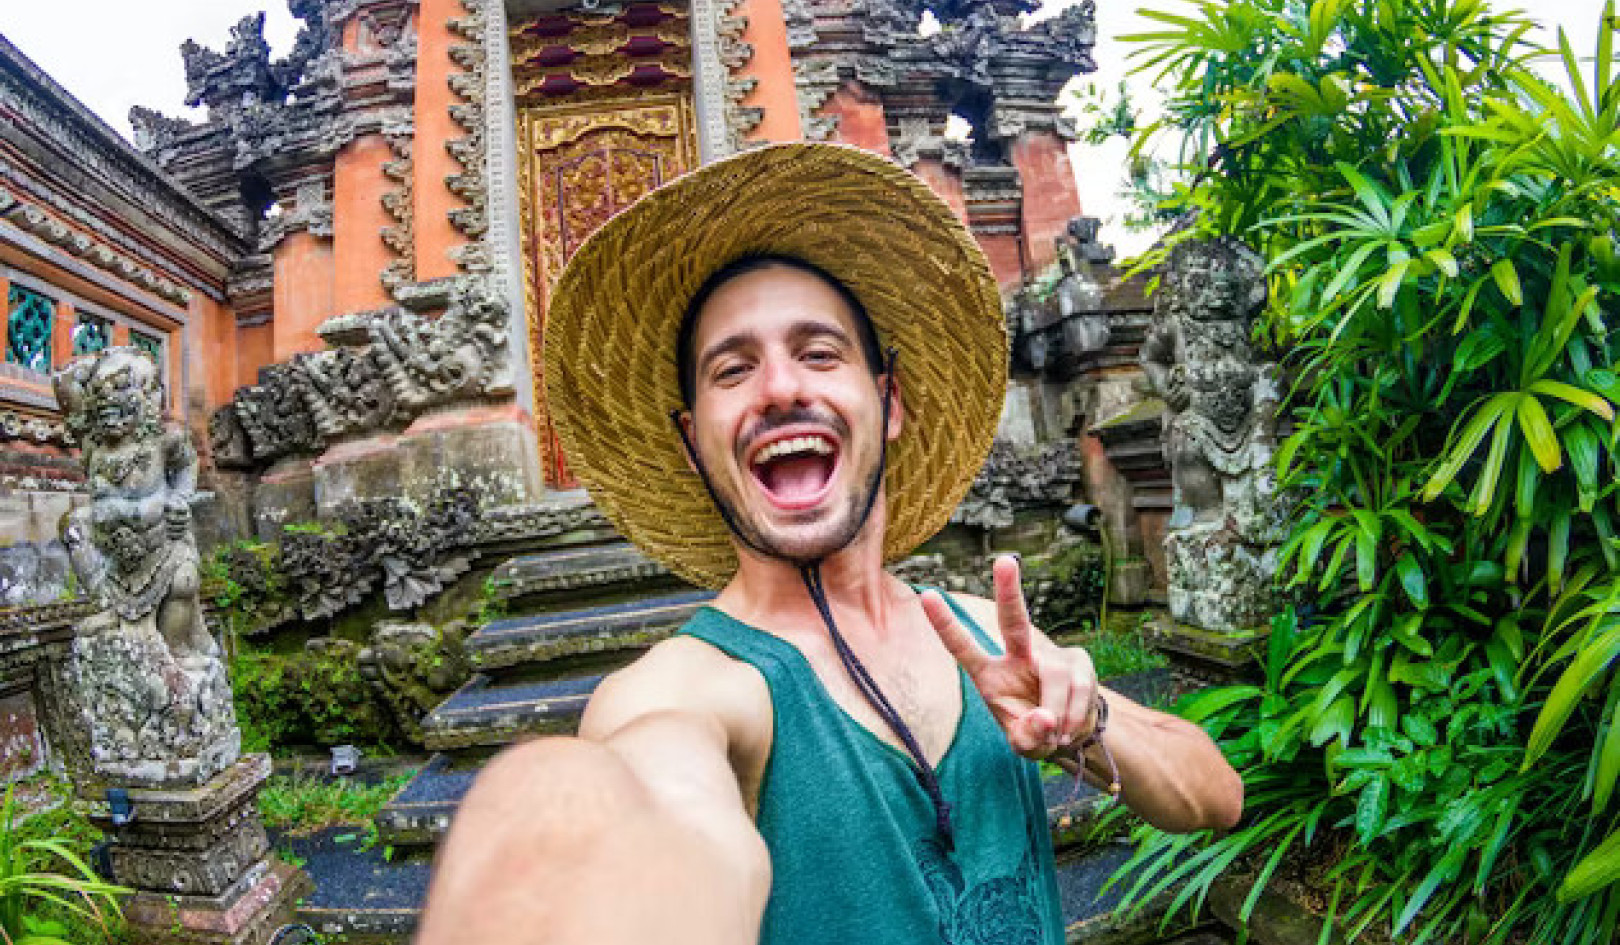 El impacto de Instagram en el comportamiento turístico: cómo viajar con respeto